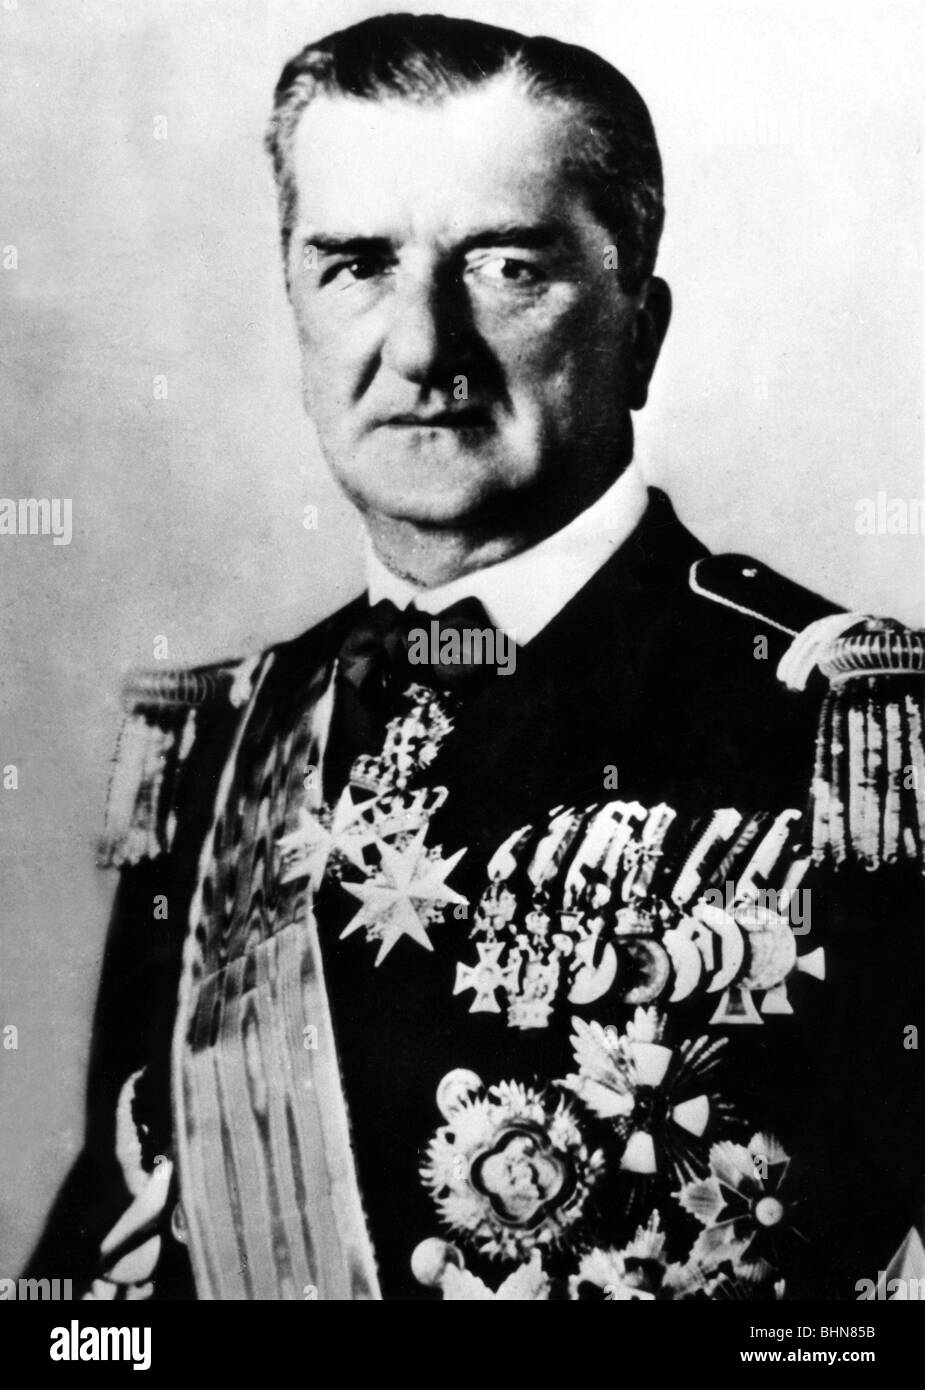 Horthy de Nagybanya, Miklos, 18.6.88 - 9.2.1957, ungarischer Admiral und Politiker, Regent von Ungarn 1920 - 1944, halbe Länge in Uniform, Stockfoto